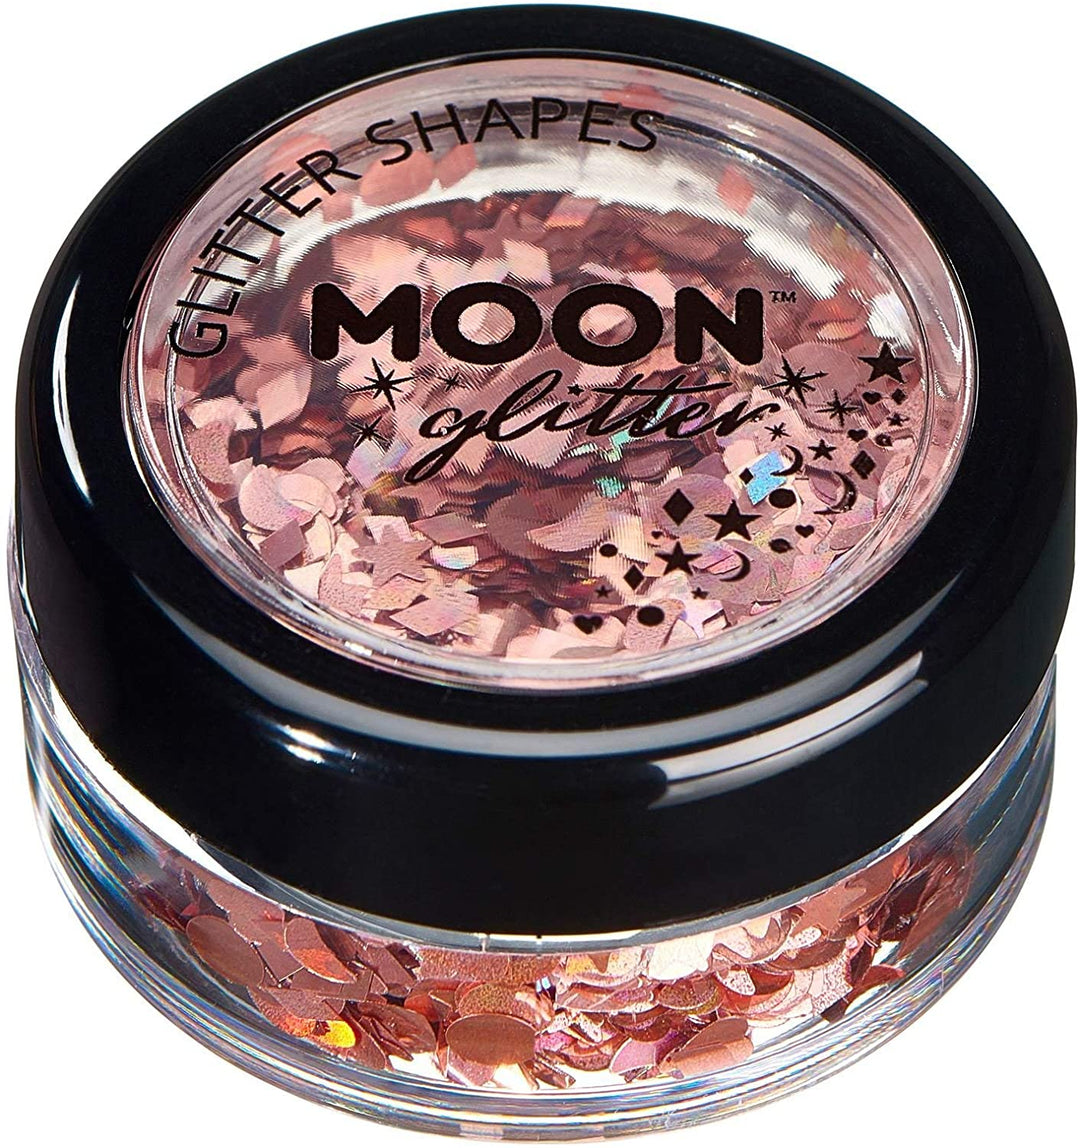 Holografische Glitzerformen von Moon Glitter – Roségold – kosmetischer Festival-Make-up-Glitzer für Gesicht, Körper, Nägel, Haare, Lippen – 3 g